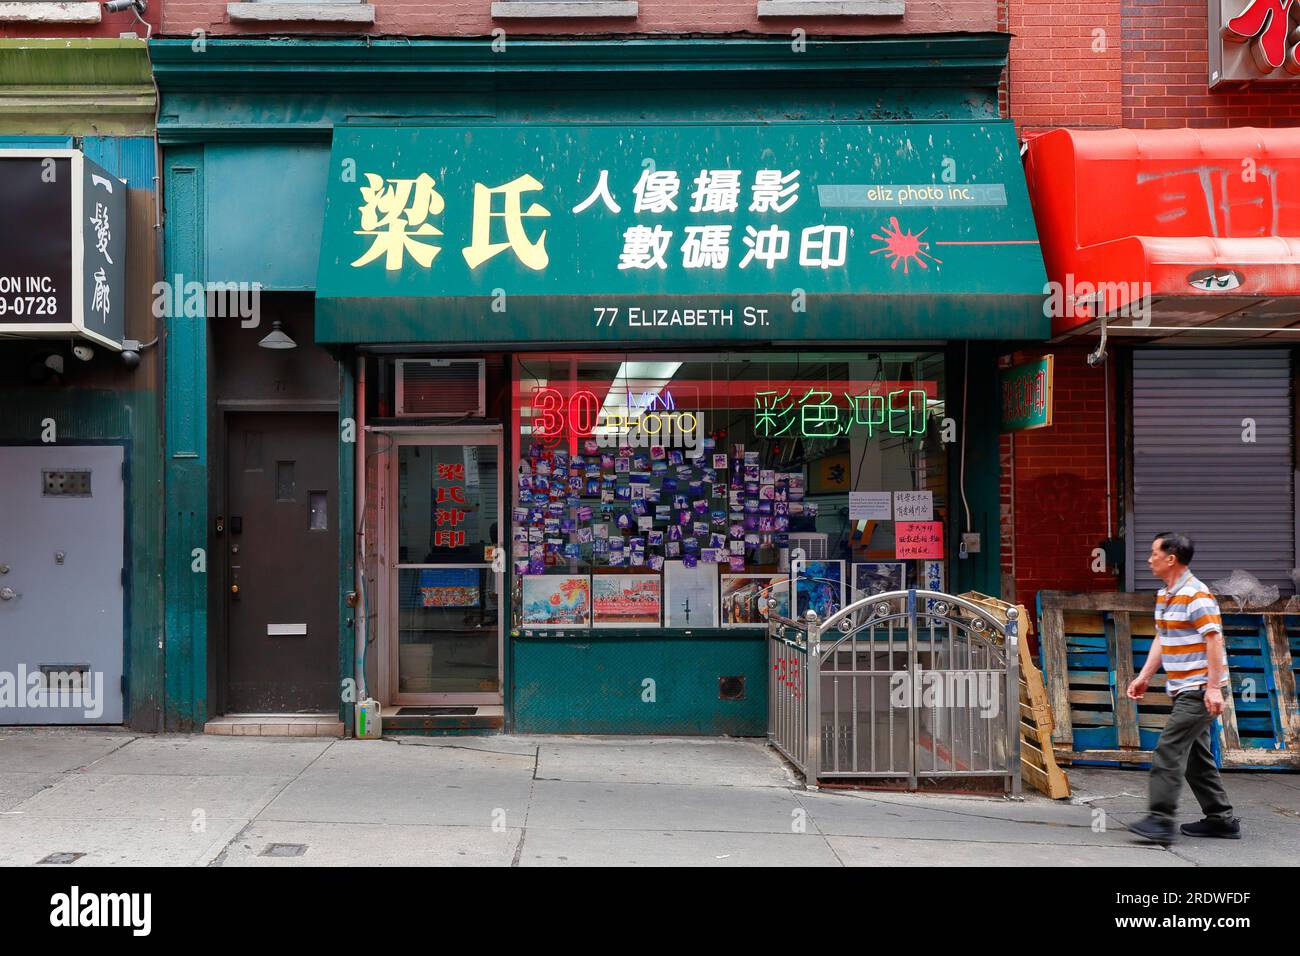 Eliz Digital, 77 Elizabeth St, New York, NYC, Foto eines Foto- und Filmgeschäfts in Manhattan Chinatown. Stockfoto